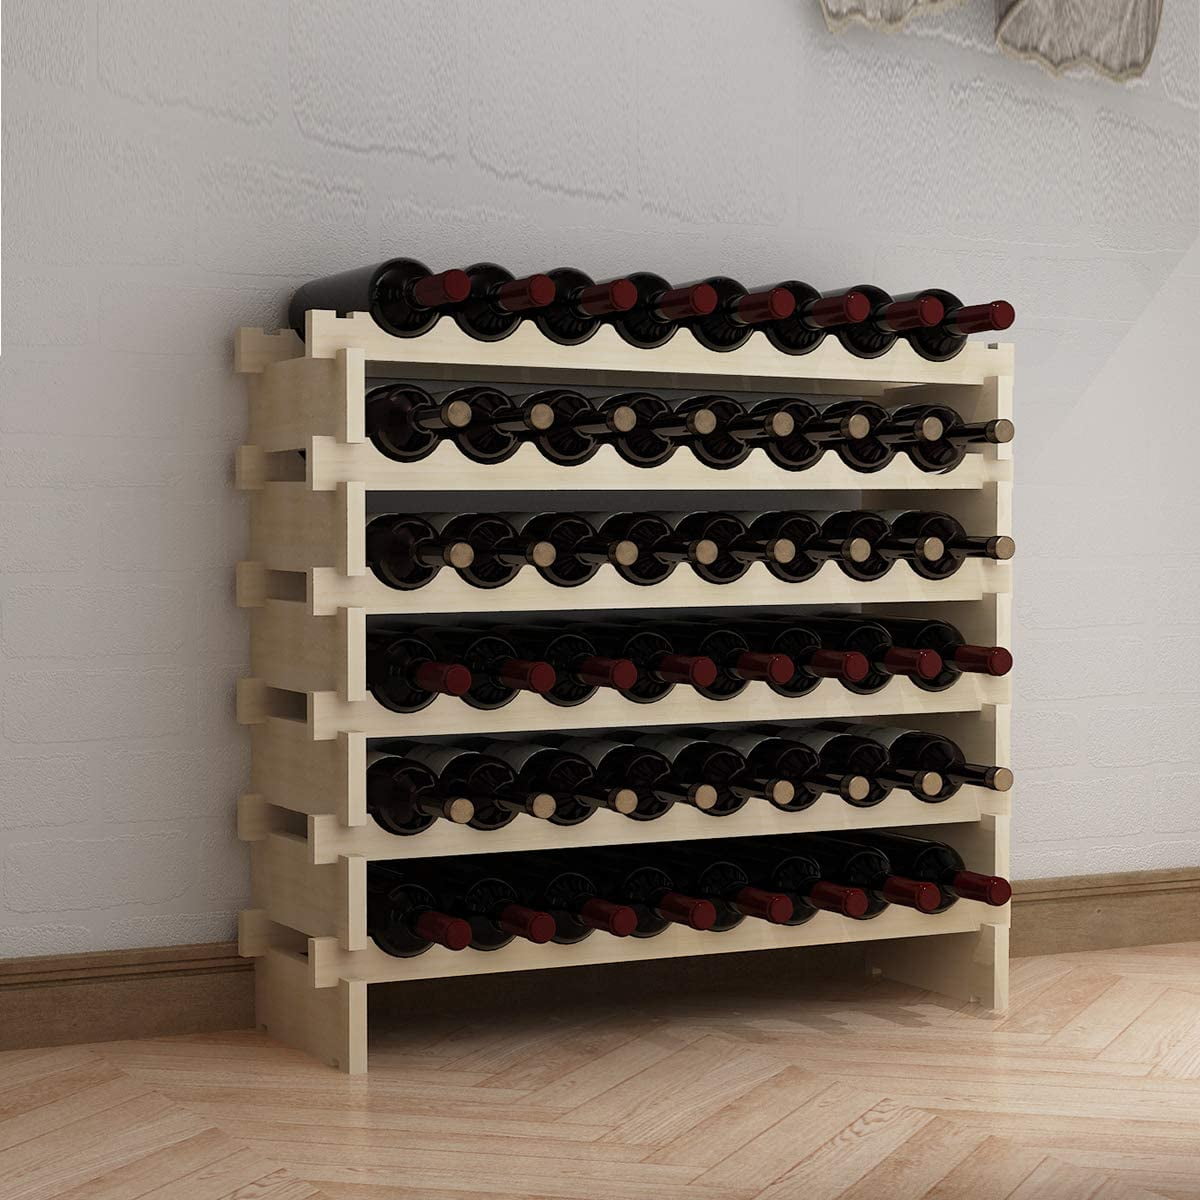 SOGES Home Pub Solid Wood Wine Rack - Freestanding Storage Display